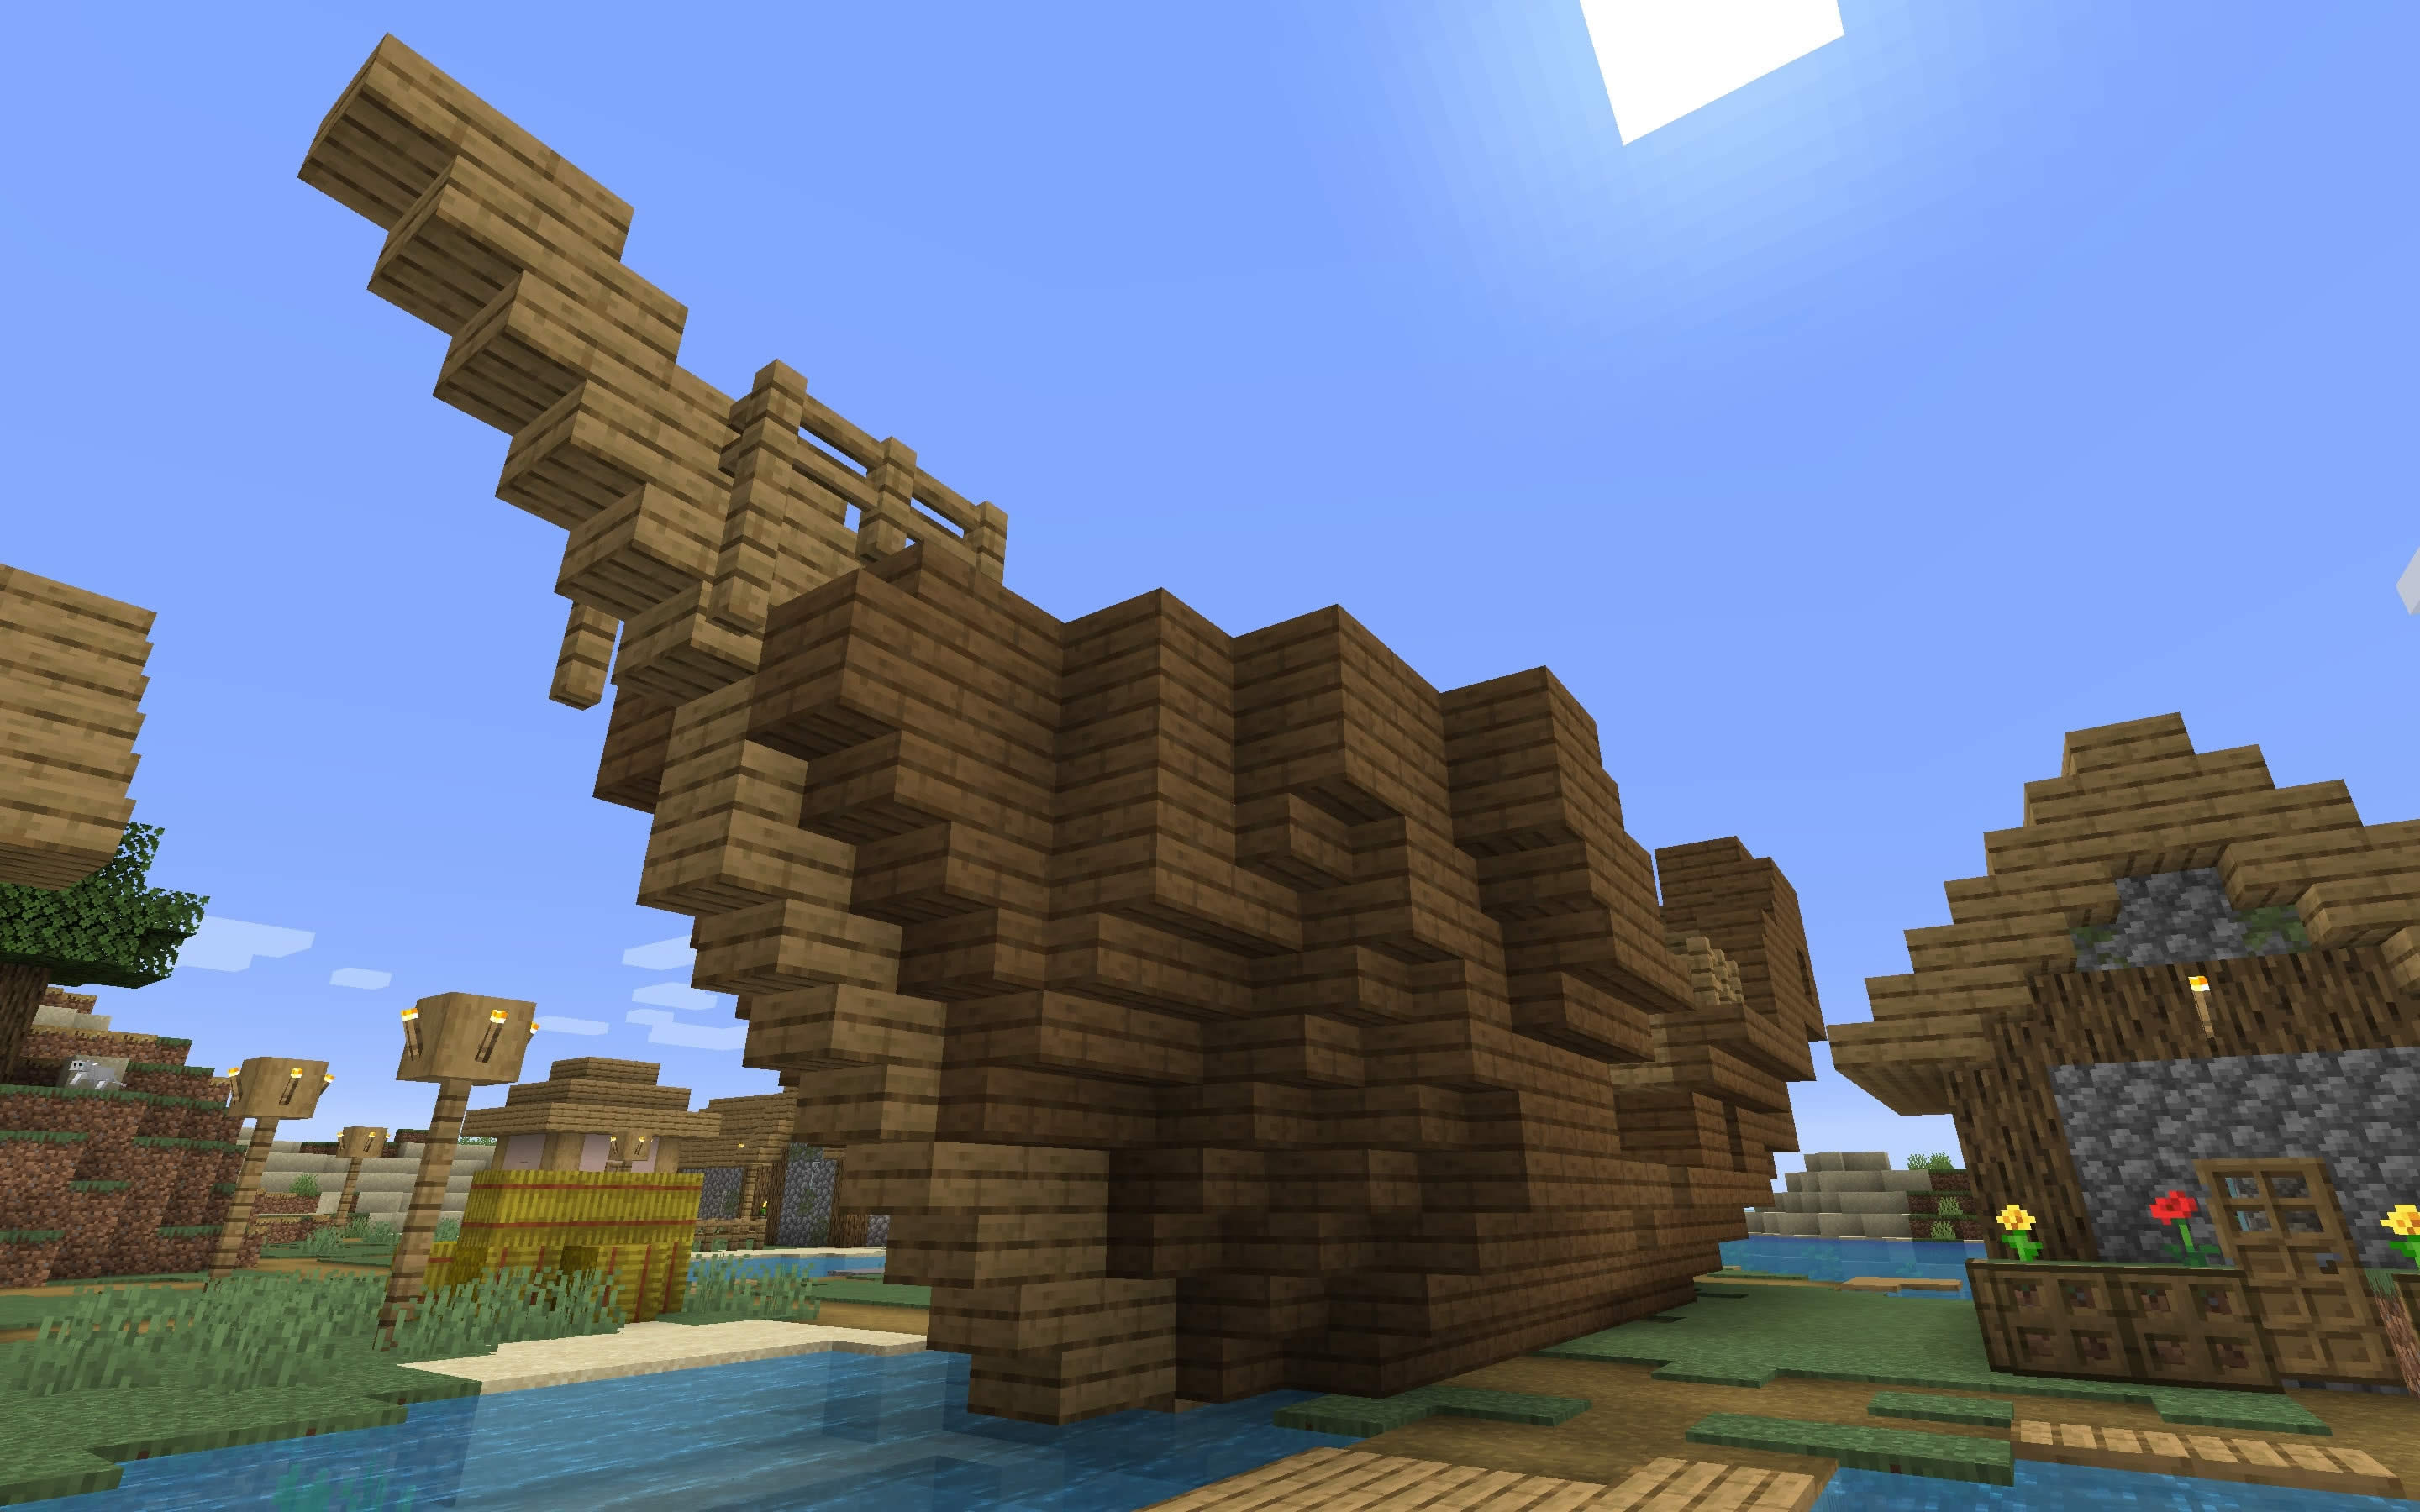 Sunken Ship in the Village Minecraft 1.14 Seed